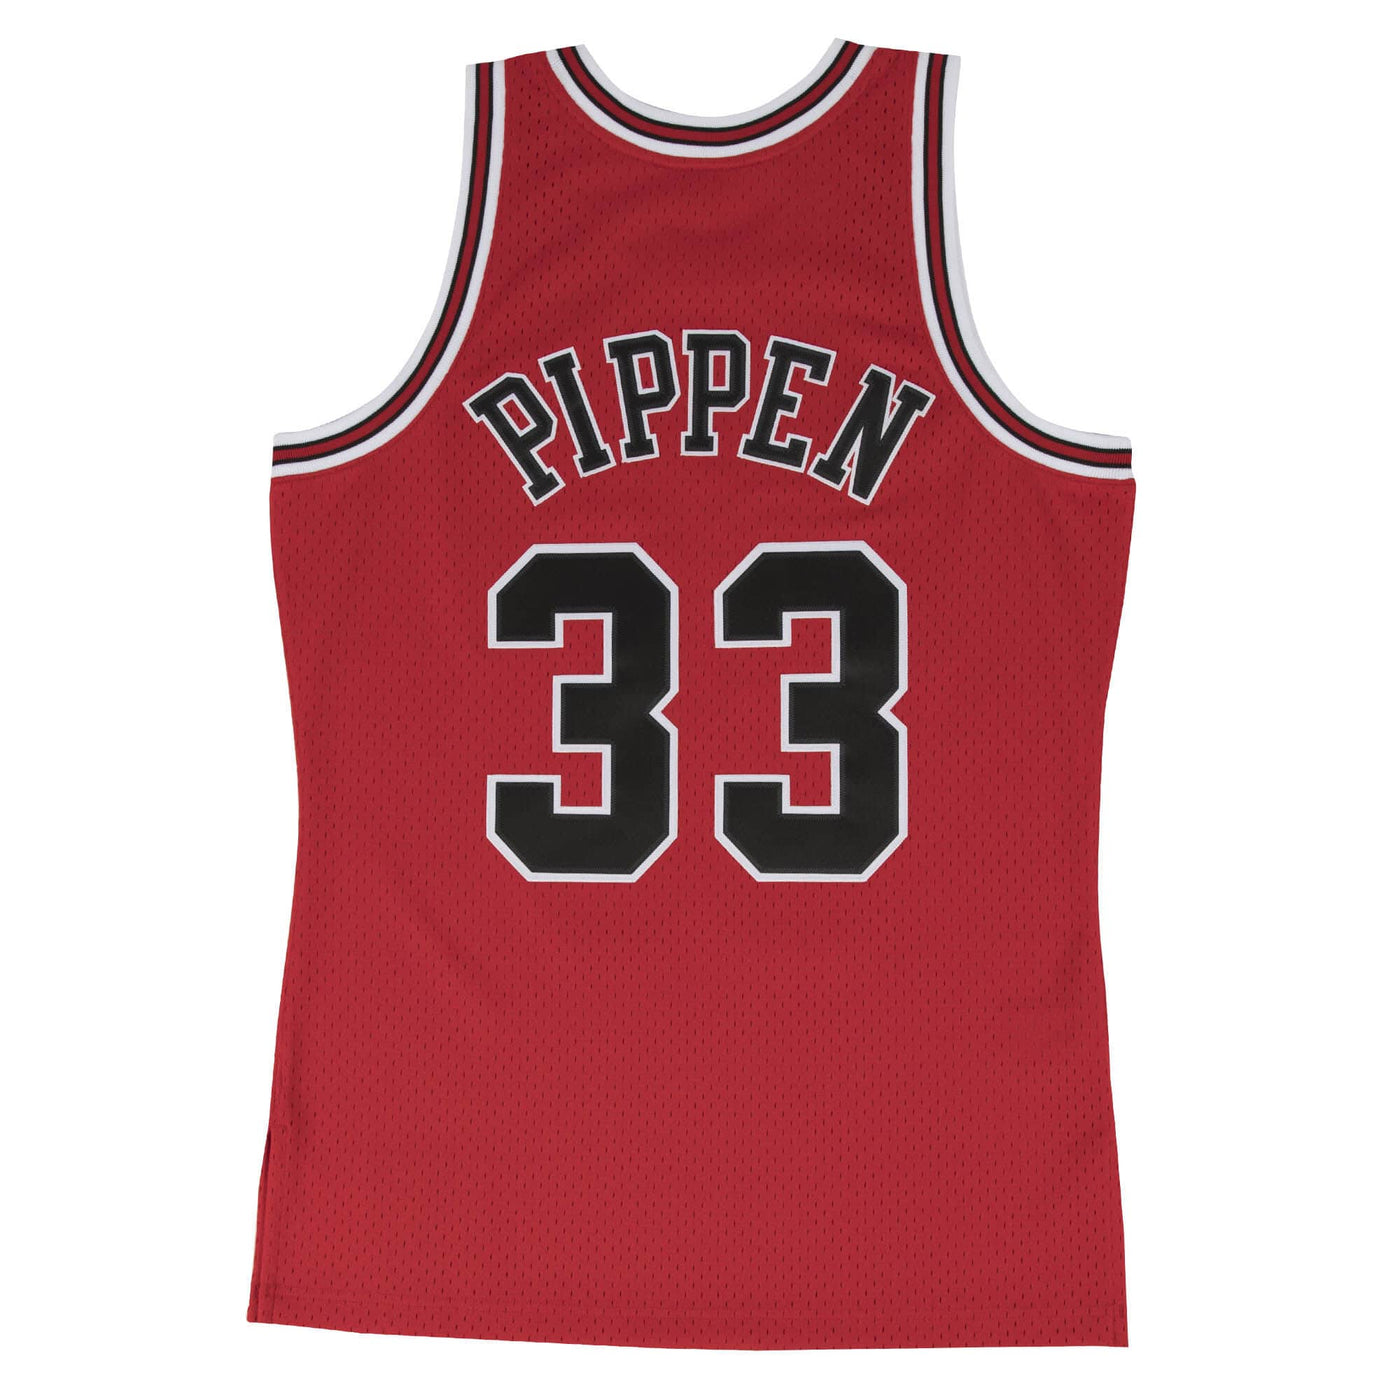 Mens Chicago Bulls Scottie Pippen Swingman Jersey